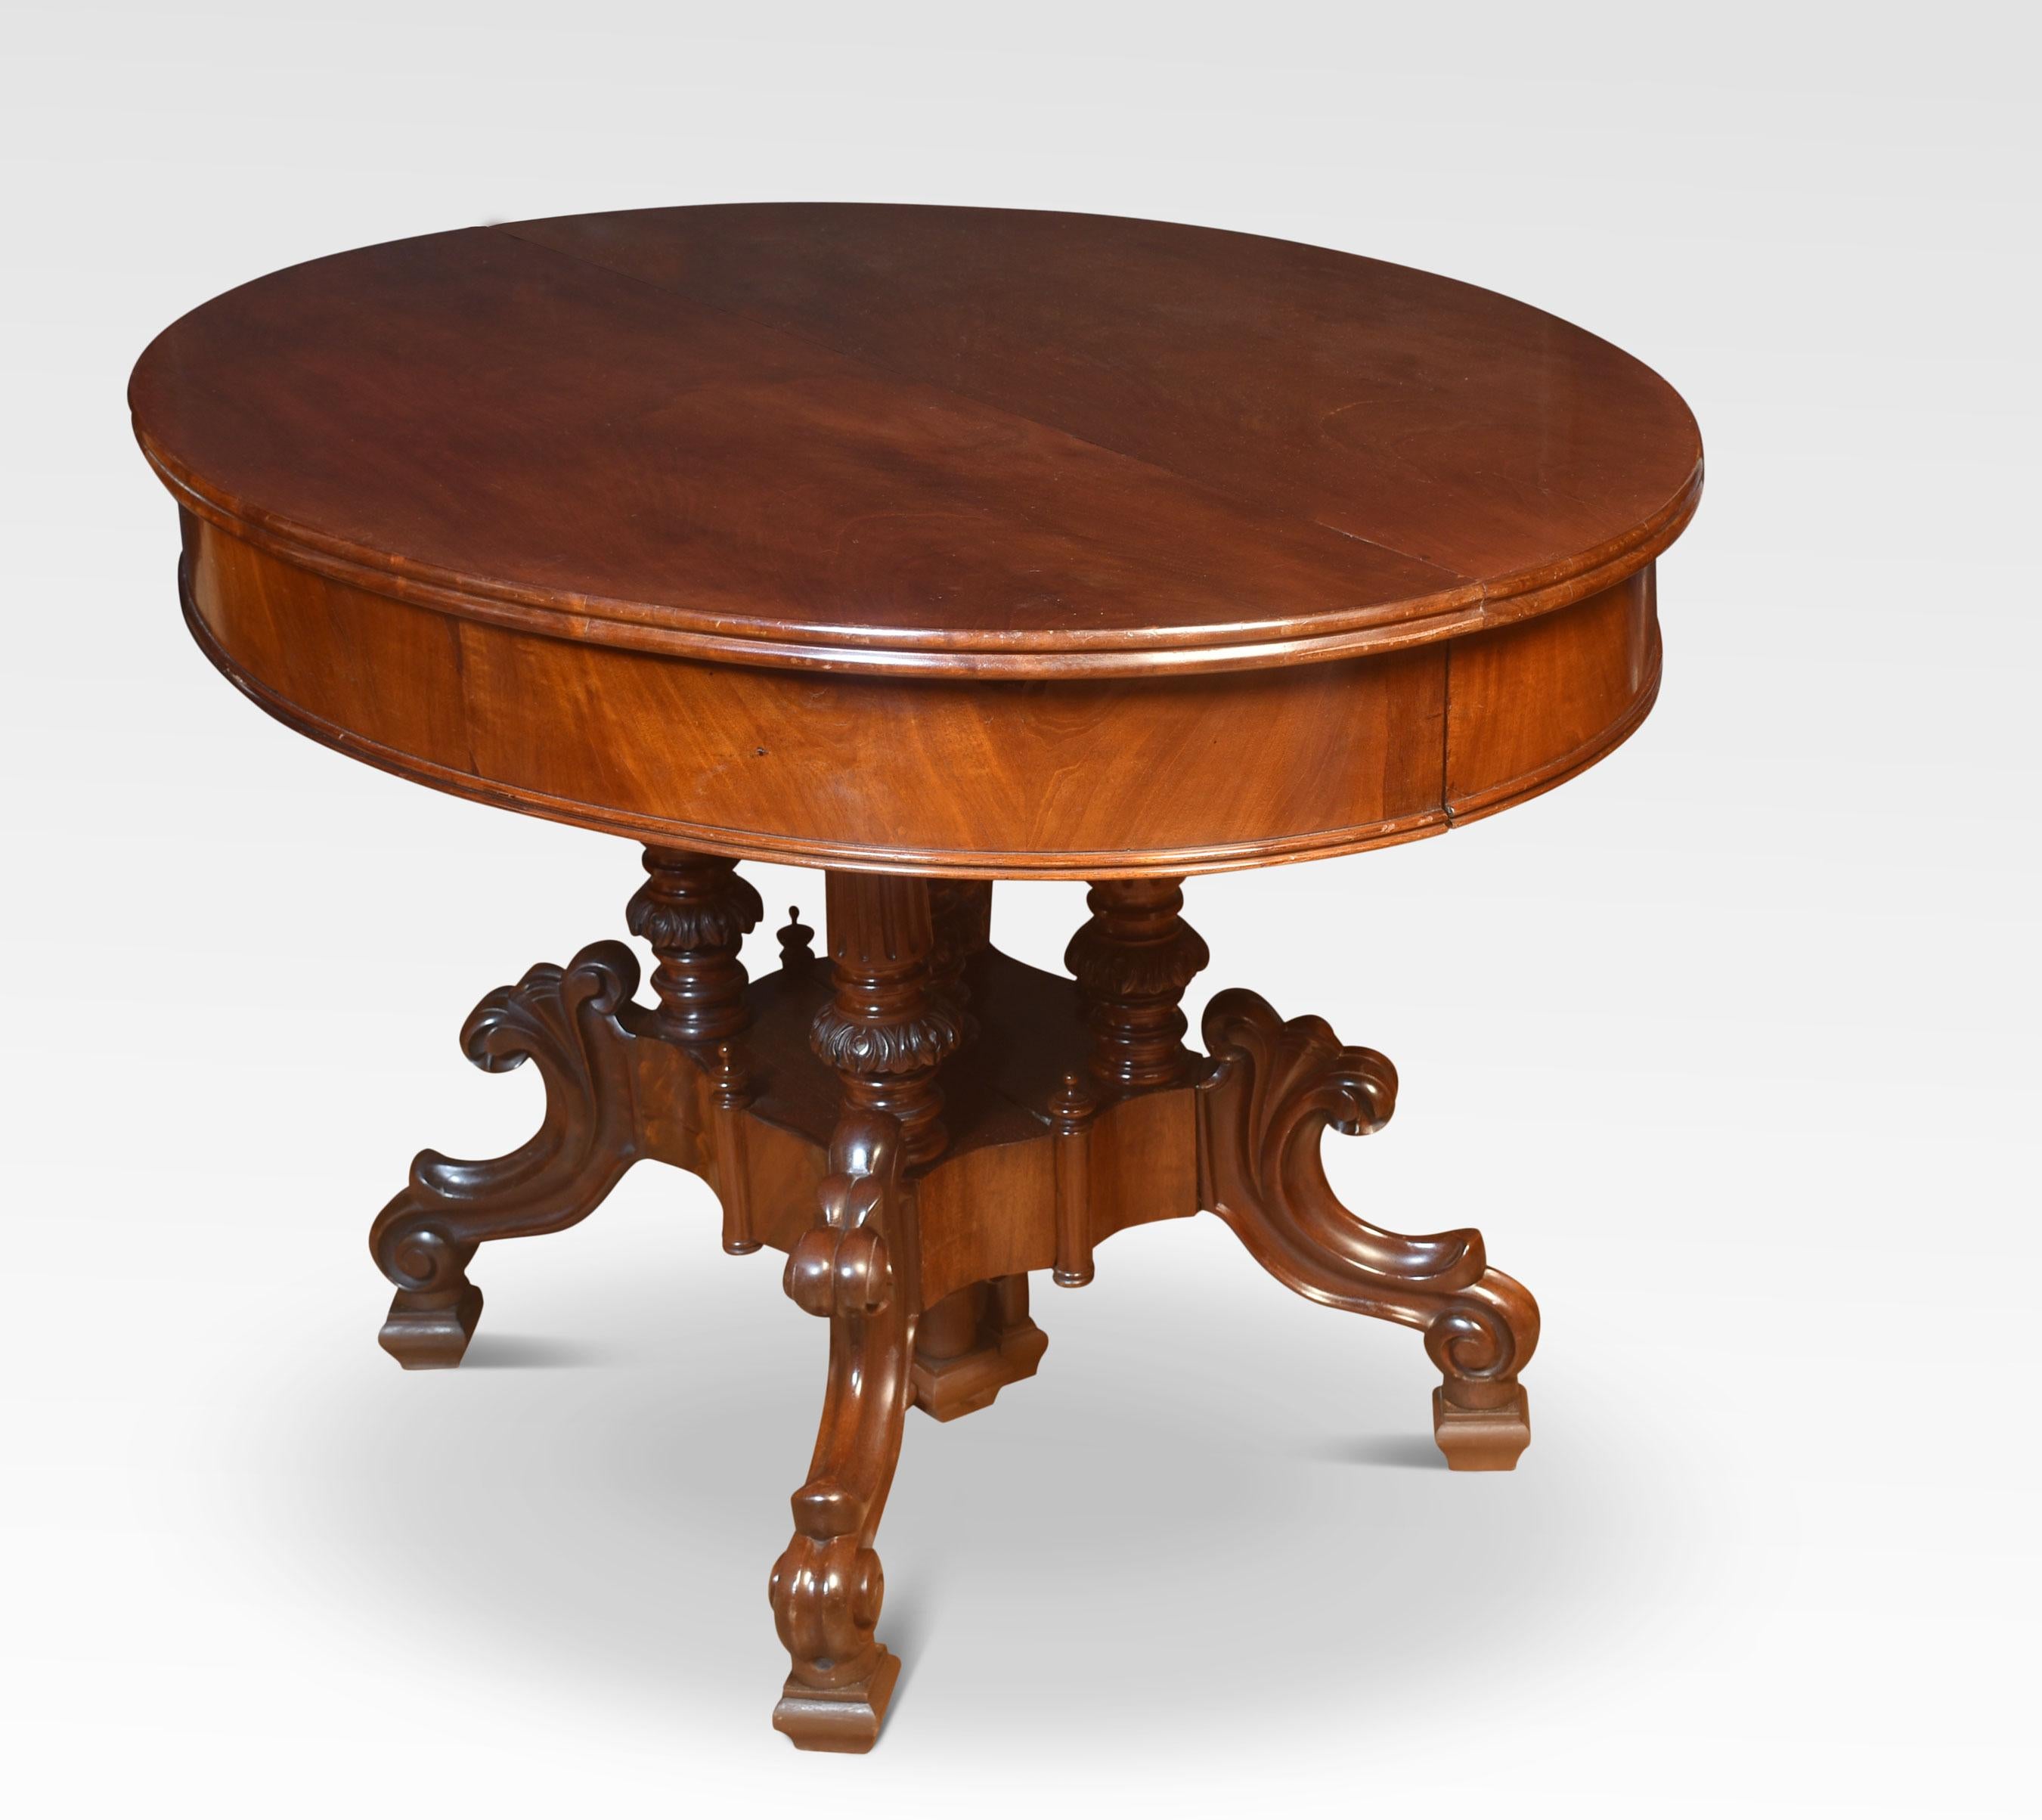 Mahogany 19th century mahogany dining table